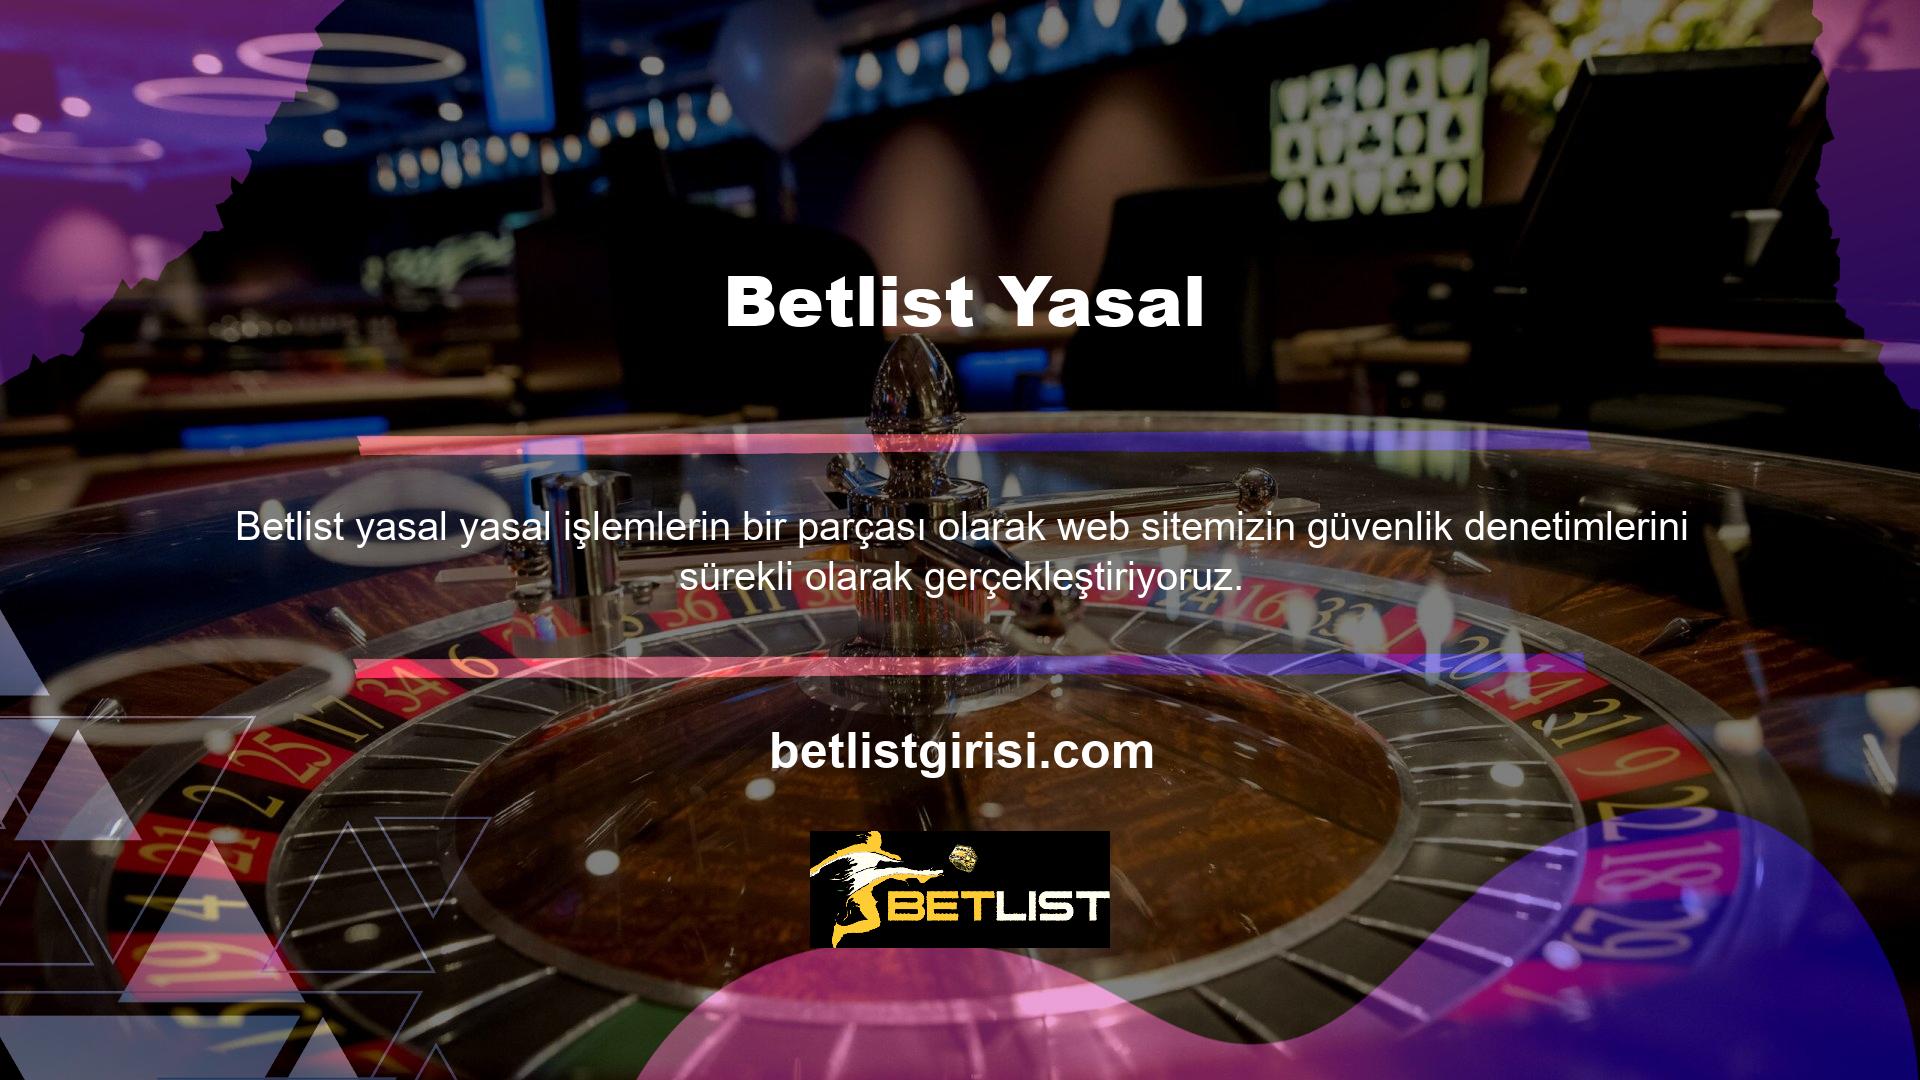 Betlist casino bilgileri ve casino sertifikaları üye tarafından yönetilen ana sayfada yayınlanmaktadır